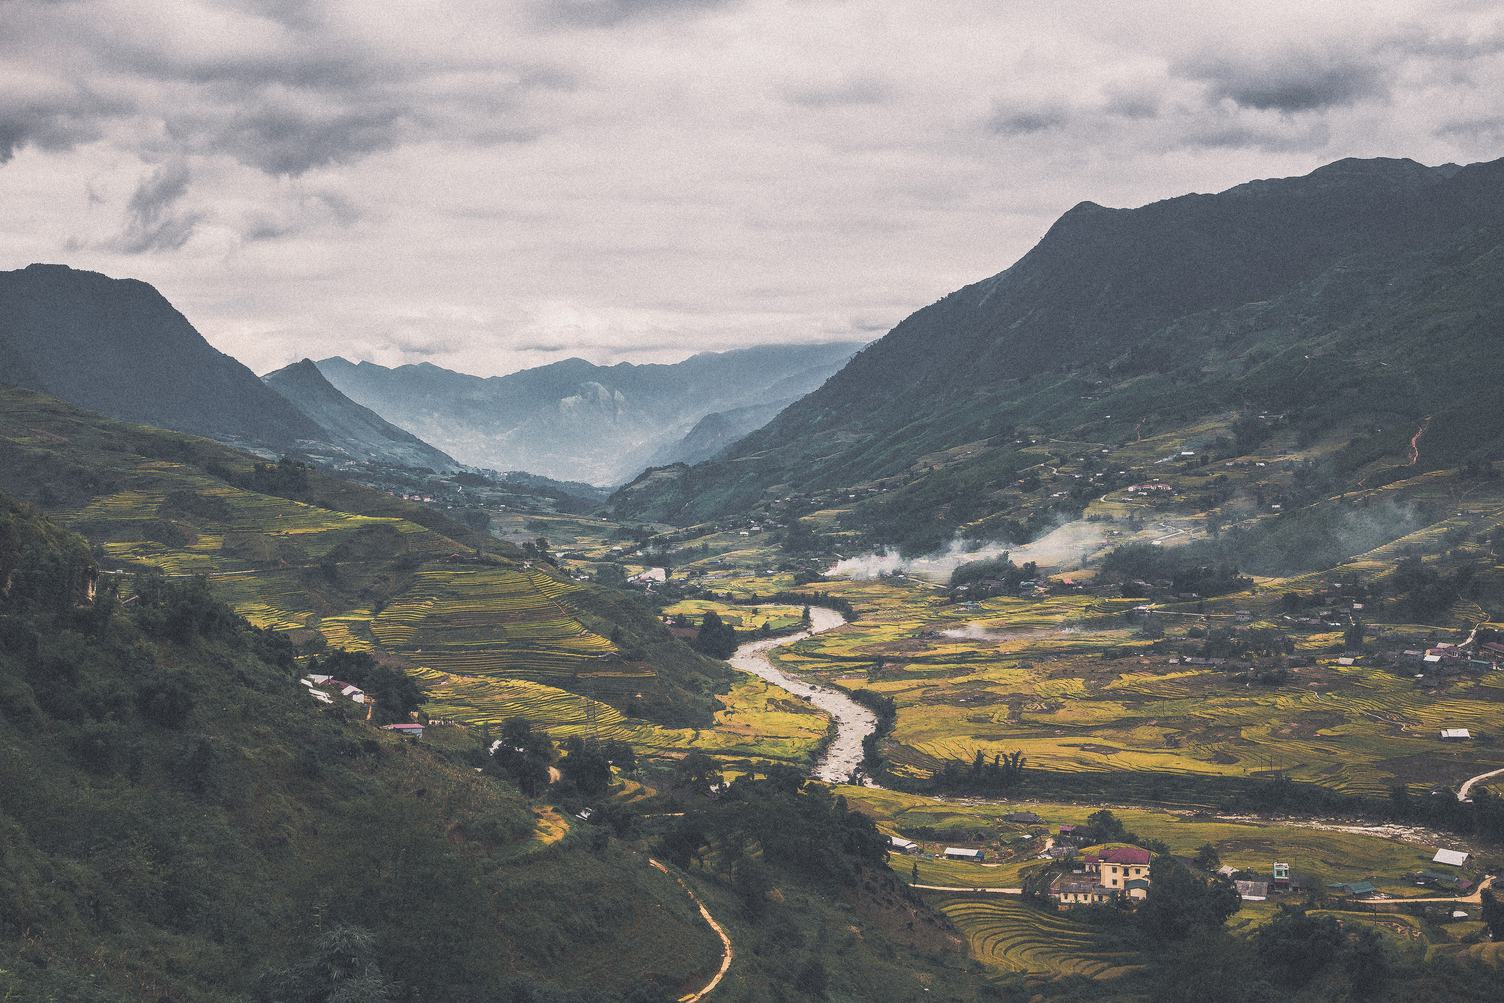 Village in the Valley in Vietnam